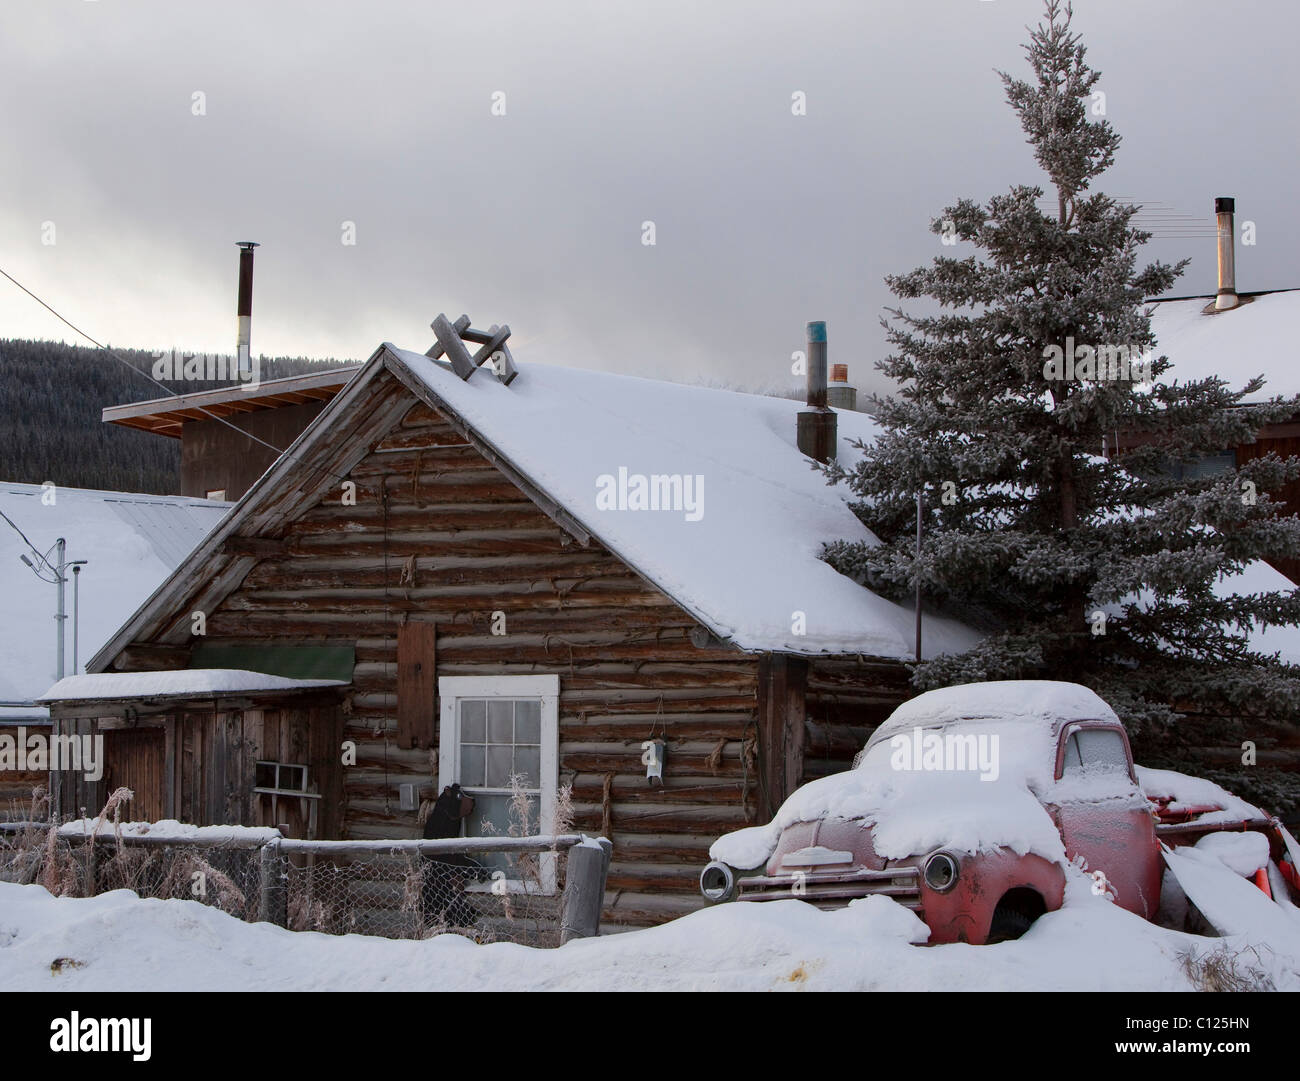 Vieille maison en bois et de vieux camions couverts de neige près du lac Bennett, Carcross, Territoire du Yukon, Canada Banque D'Images